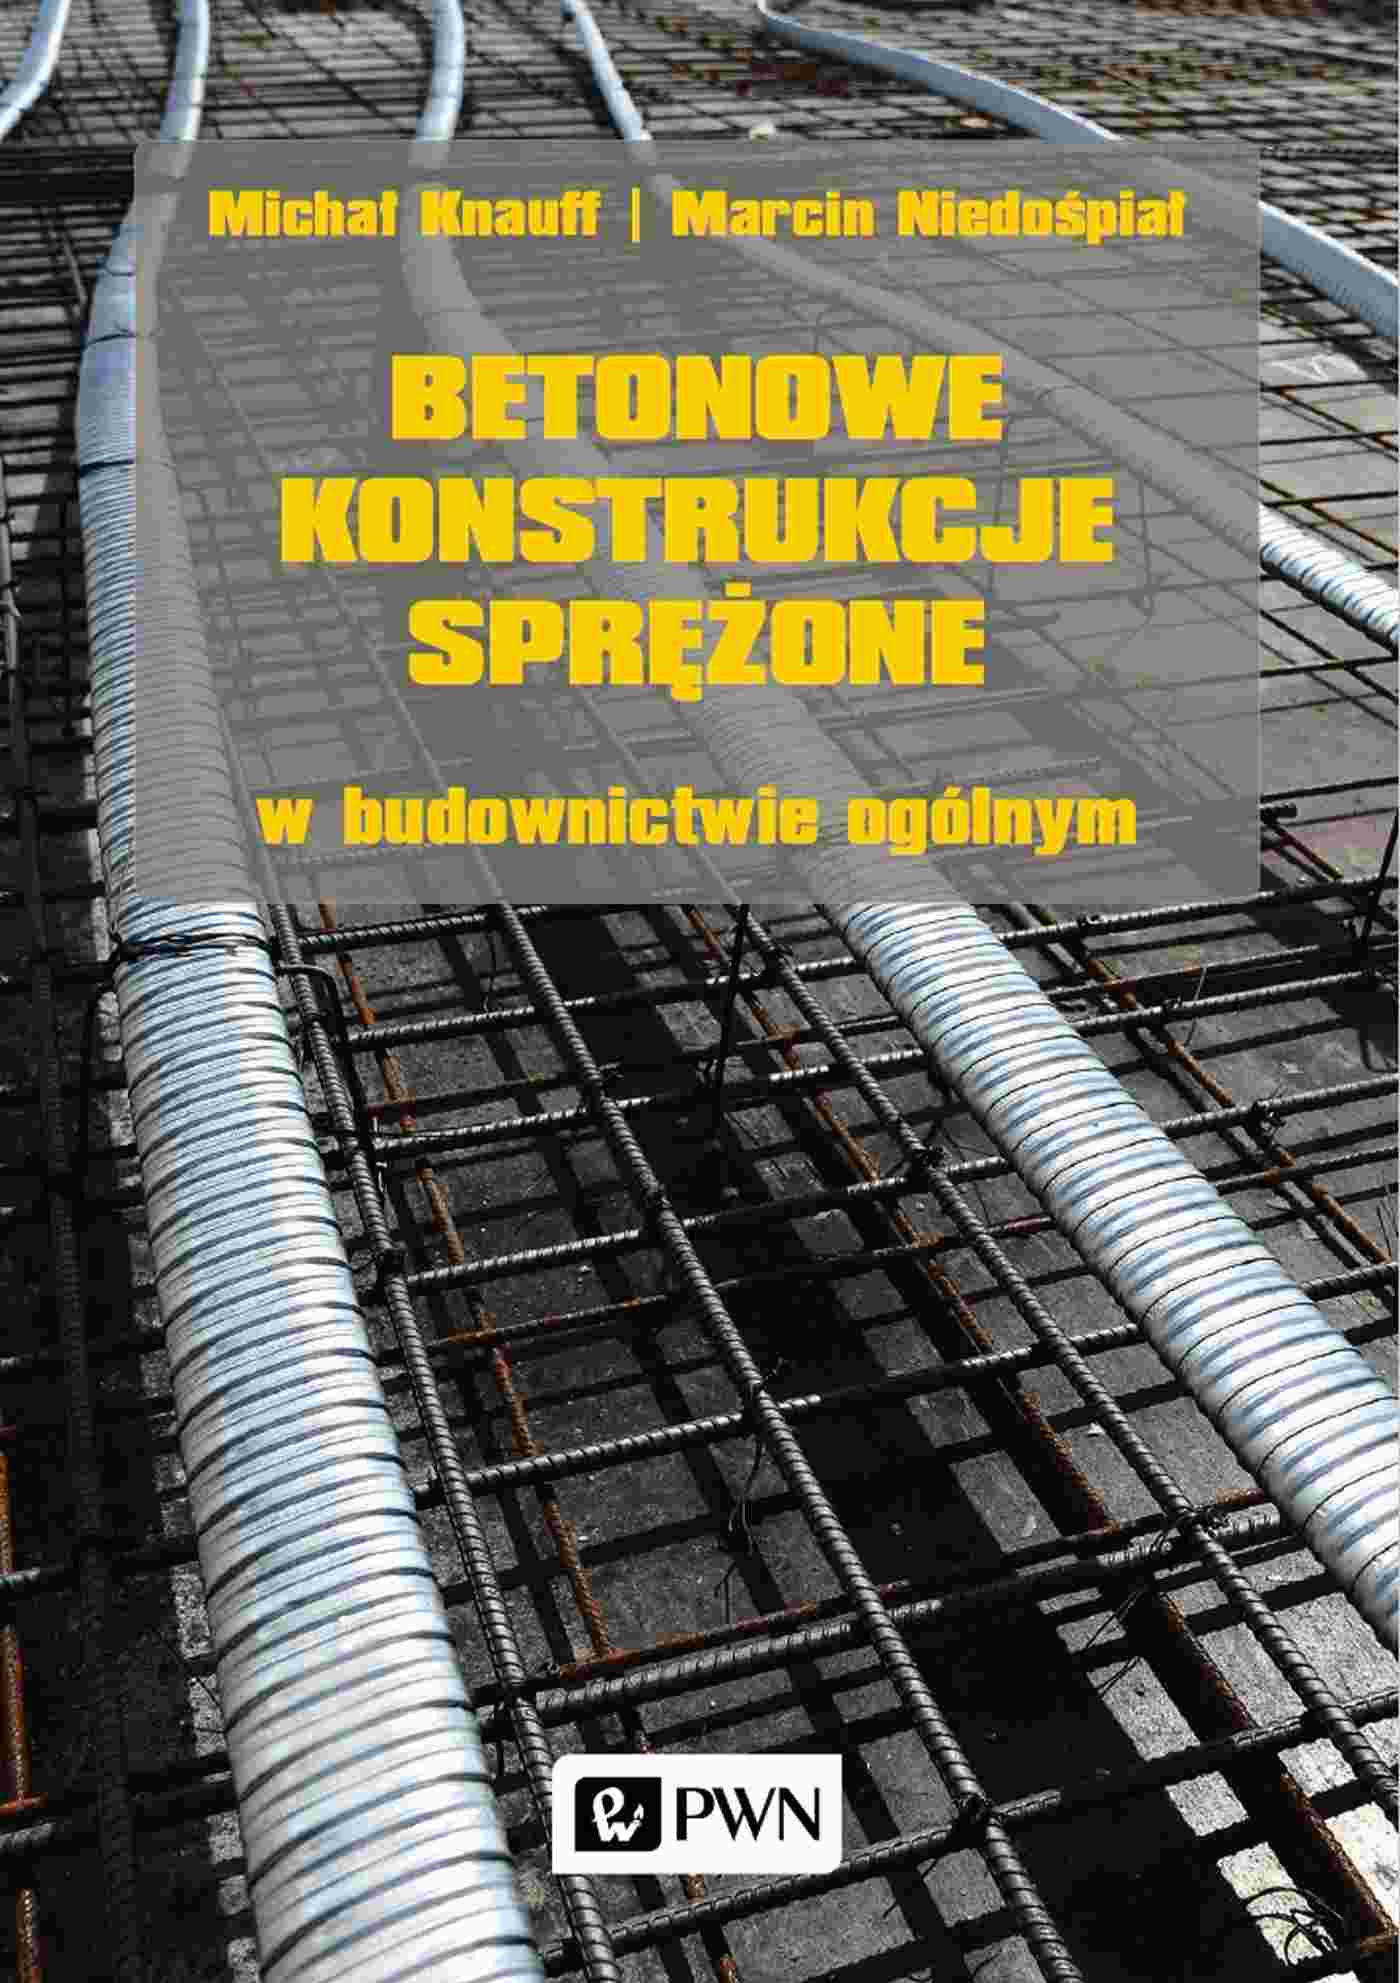 Kniha Betonowe konstrukcje sprężone w budownictwie ogólnym Michał Knauff